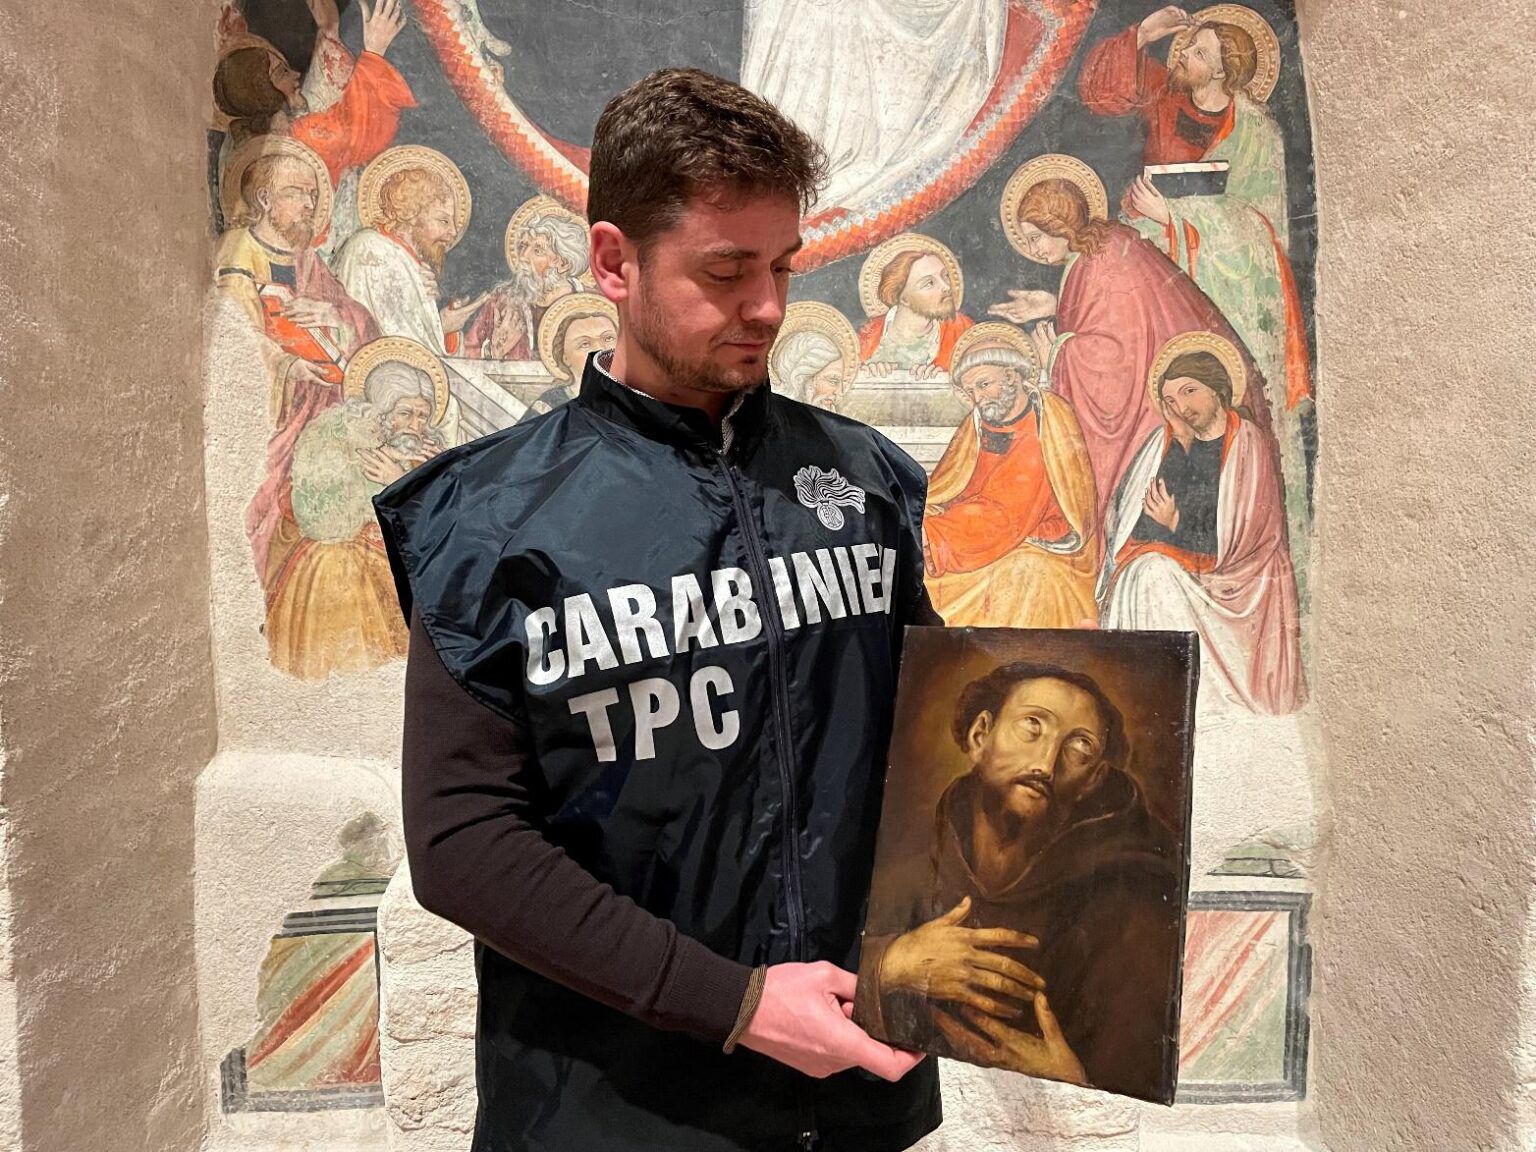 Teramo-I Carabinieri recuperano un dipinto de Il Piccio del 1800 rubato cinque anni fa